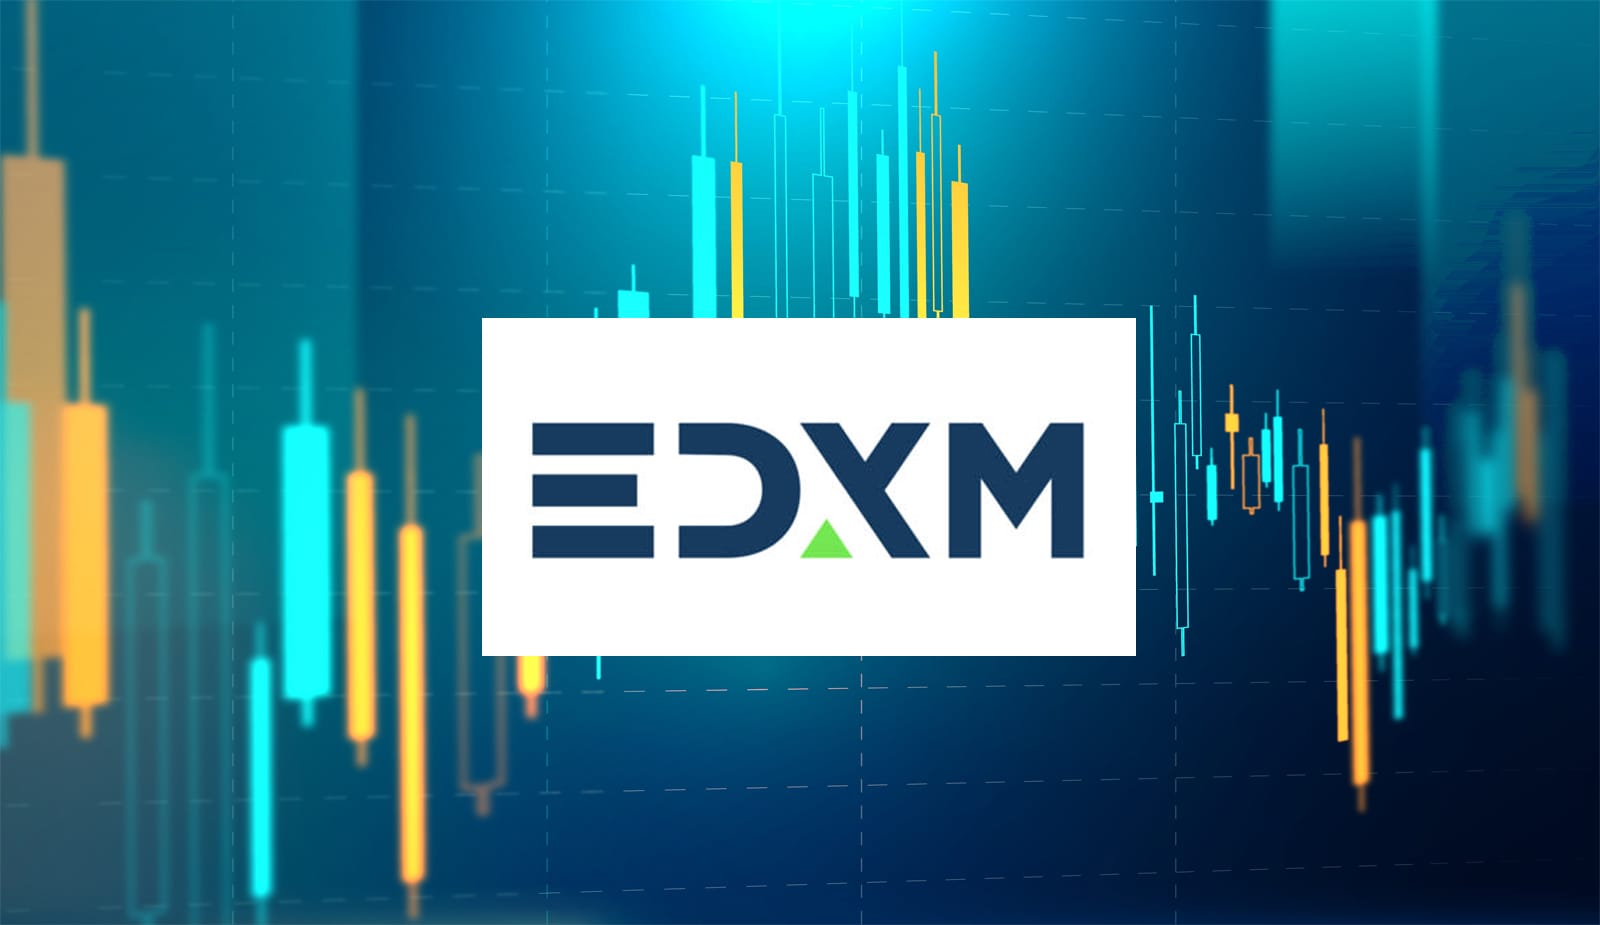 Ведущие венчурные компании и маркетмейкеры запустят криптобиржу EDX Markets. Заглавный коллаж новости.